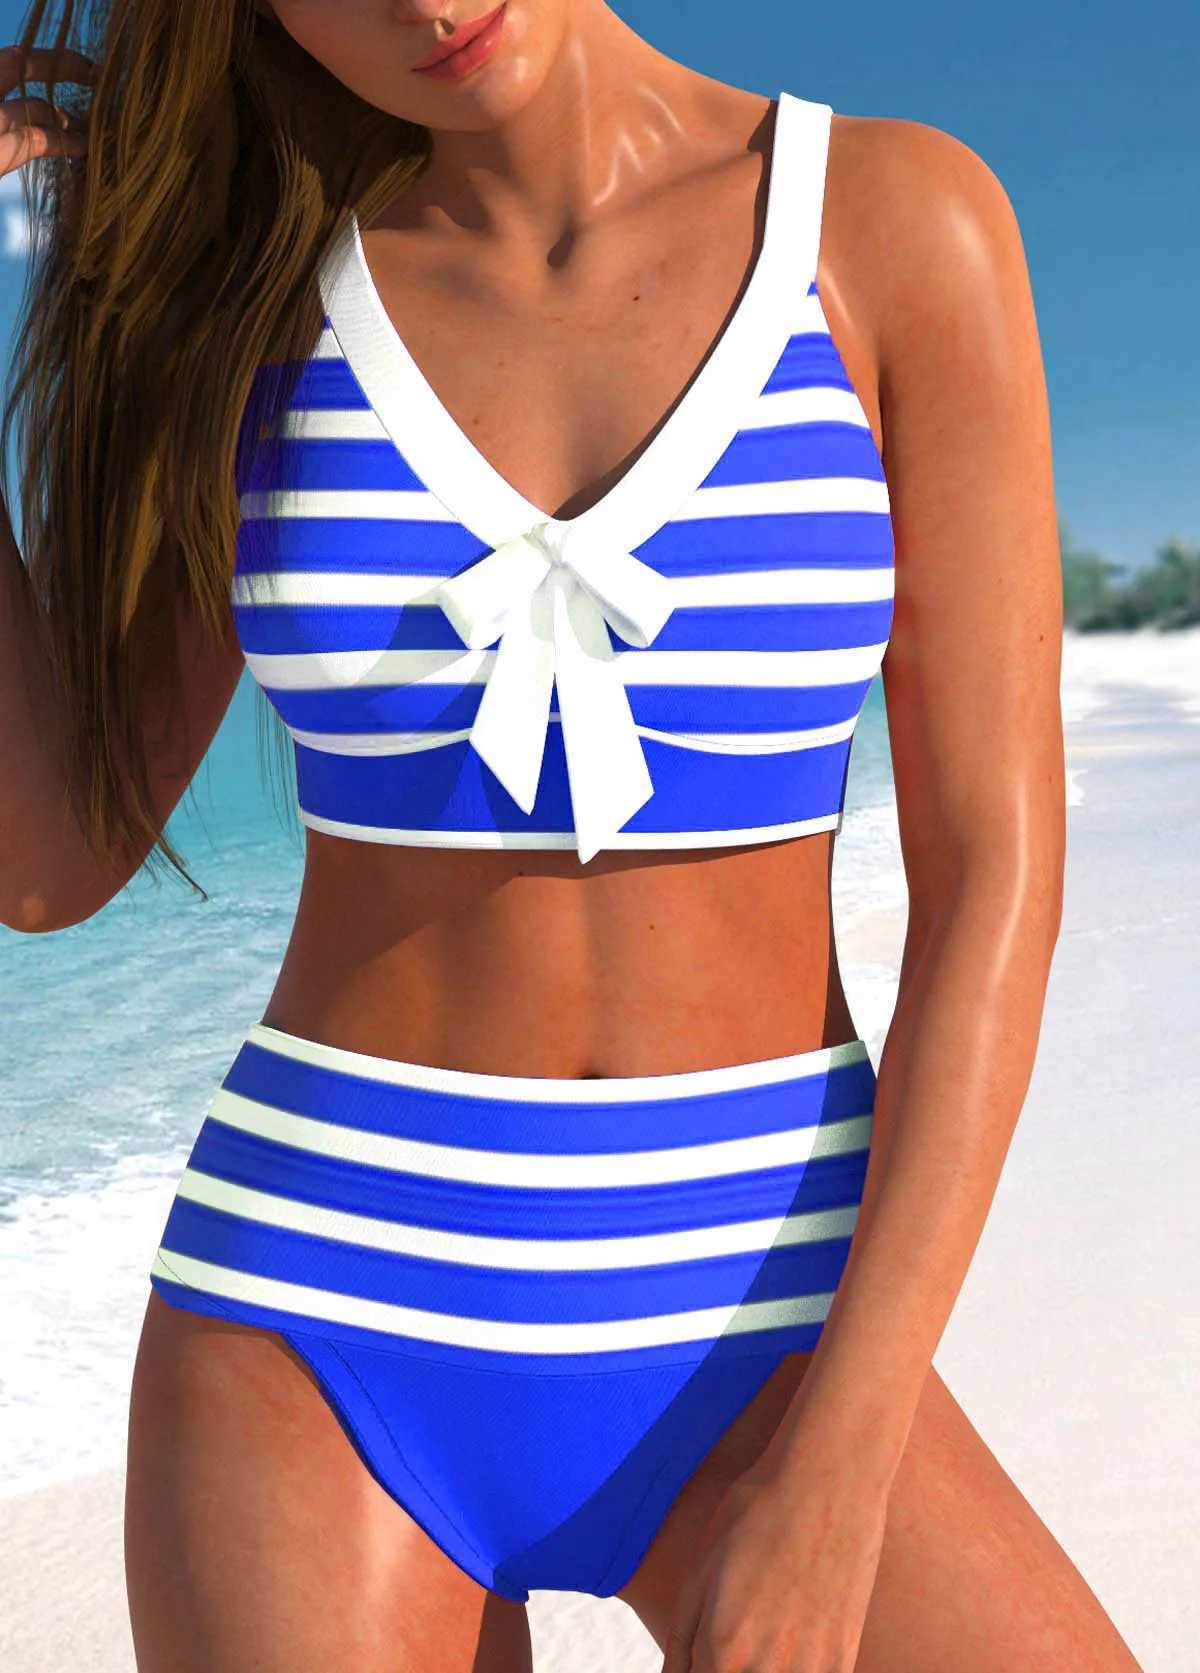 Maillots de bain pour femmes Femmes taille haute Tankini été nouveau design imprimé maillot de bain bikini maillot de bain deux pièces costume de plage XS-8XL J240221